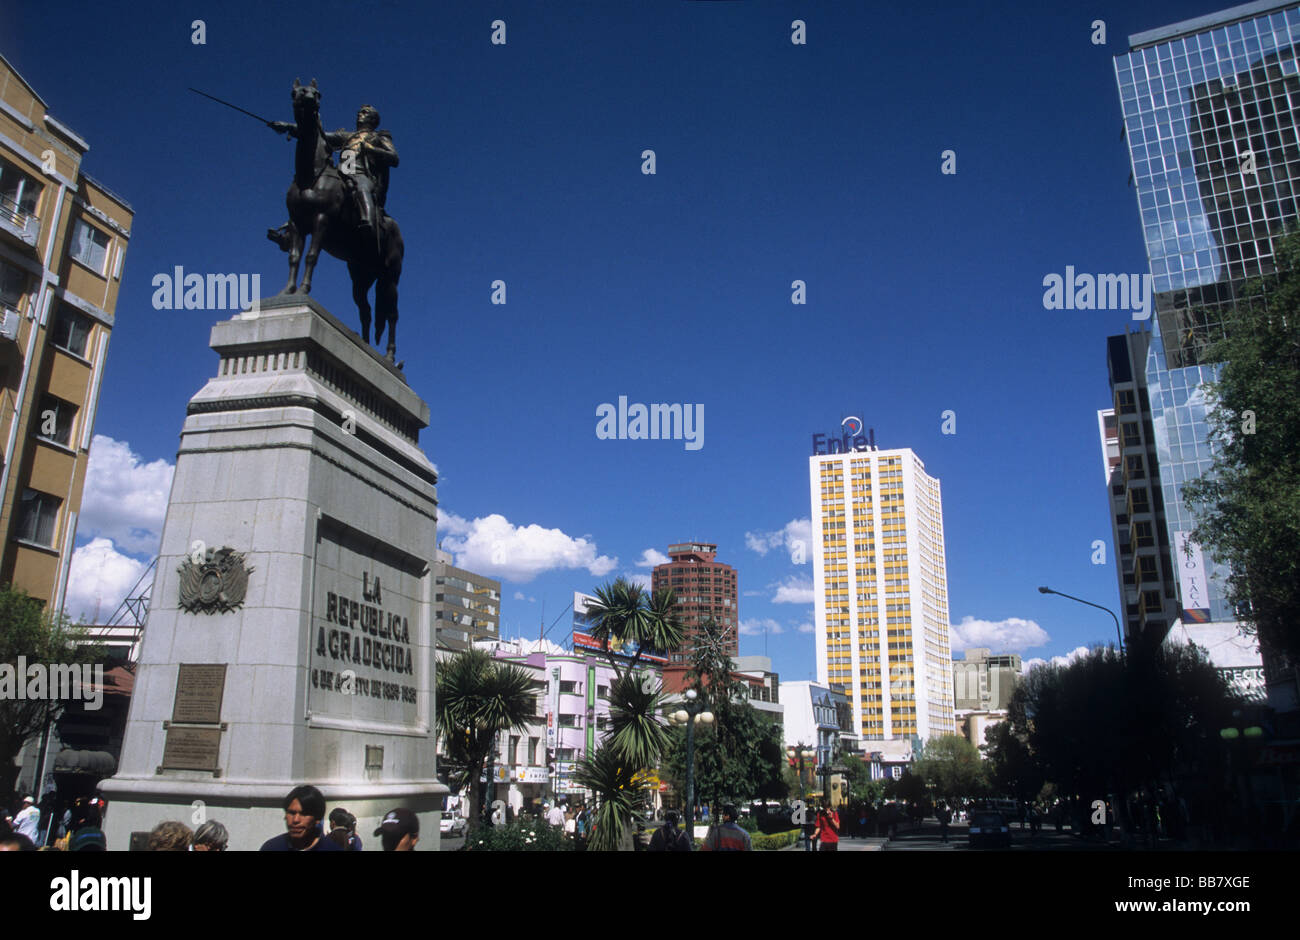 Simon Bolivar monument, Edificio Alameda building (white / yellow) in background, Paseo del Prado / Avenida 16 del Julio, La Paz, Bolivia Stock Photo